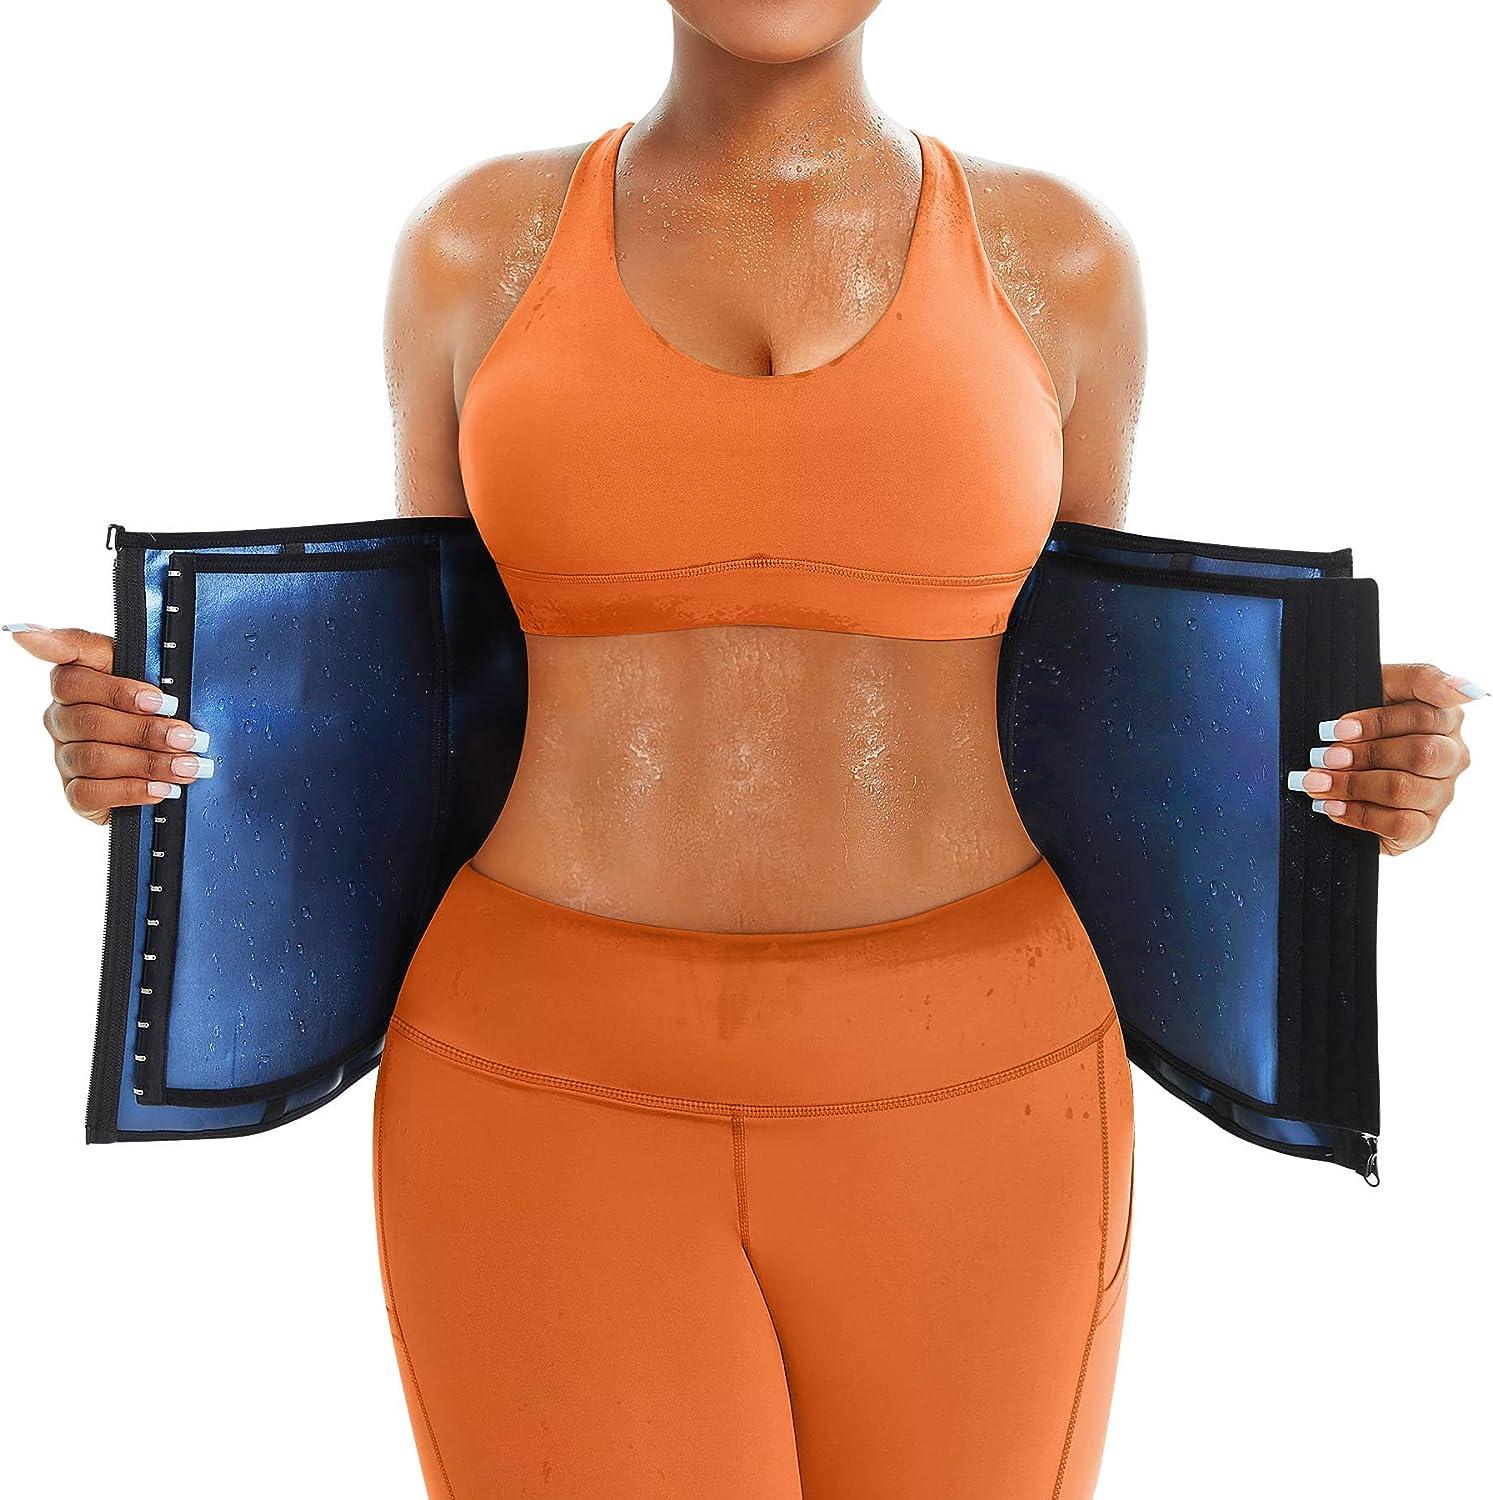 N'POLAR Women's Waist Trimmer Sauna Slimming Belt Waist Trainer Sweat Wrap